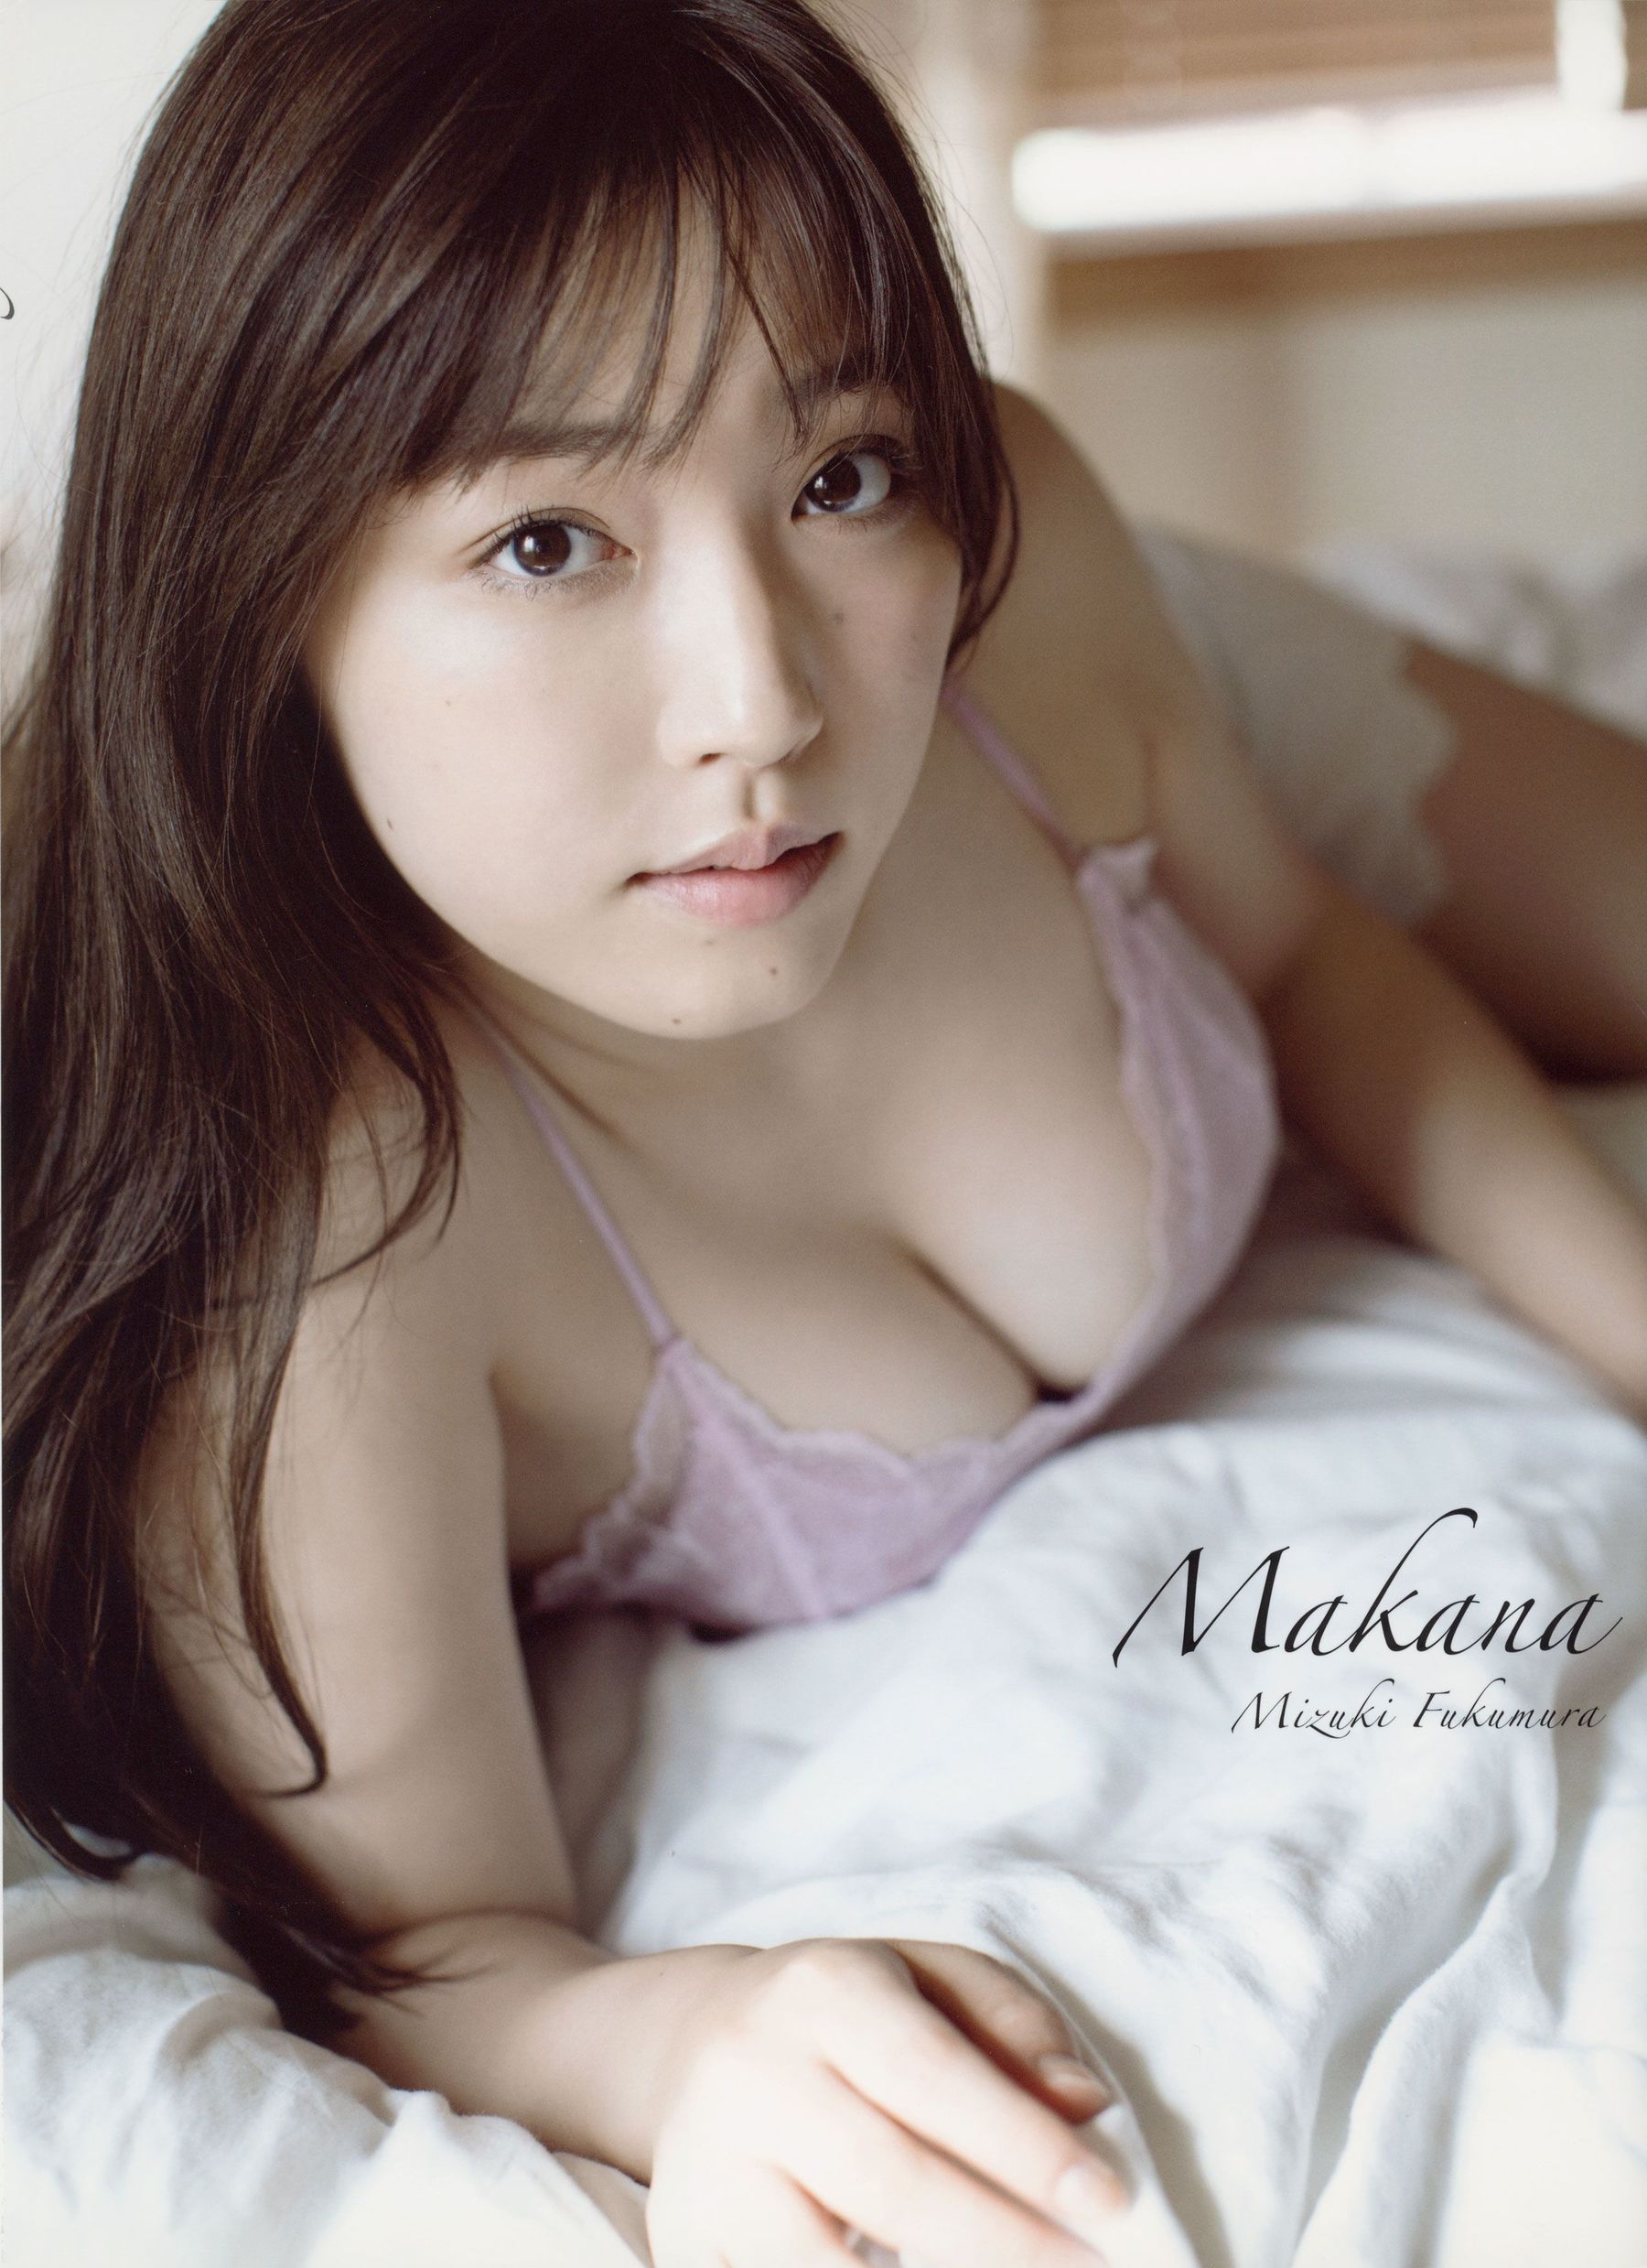 [pb] Mizuki Fukumura モーニンク?娘。 18 譜久村聖  『 Makana 』  第0张